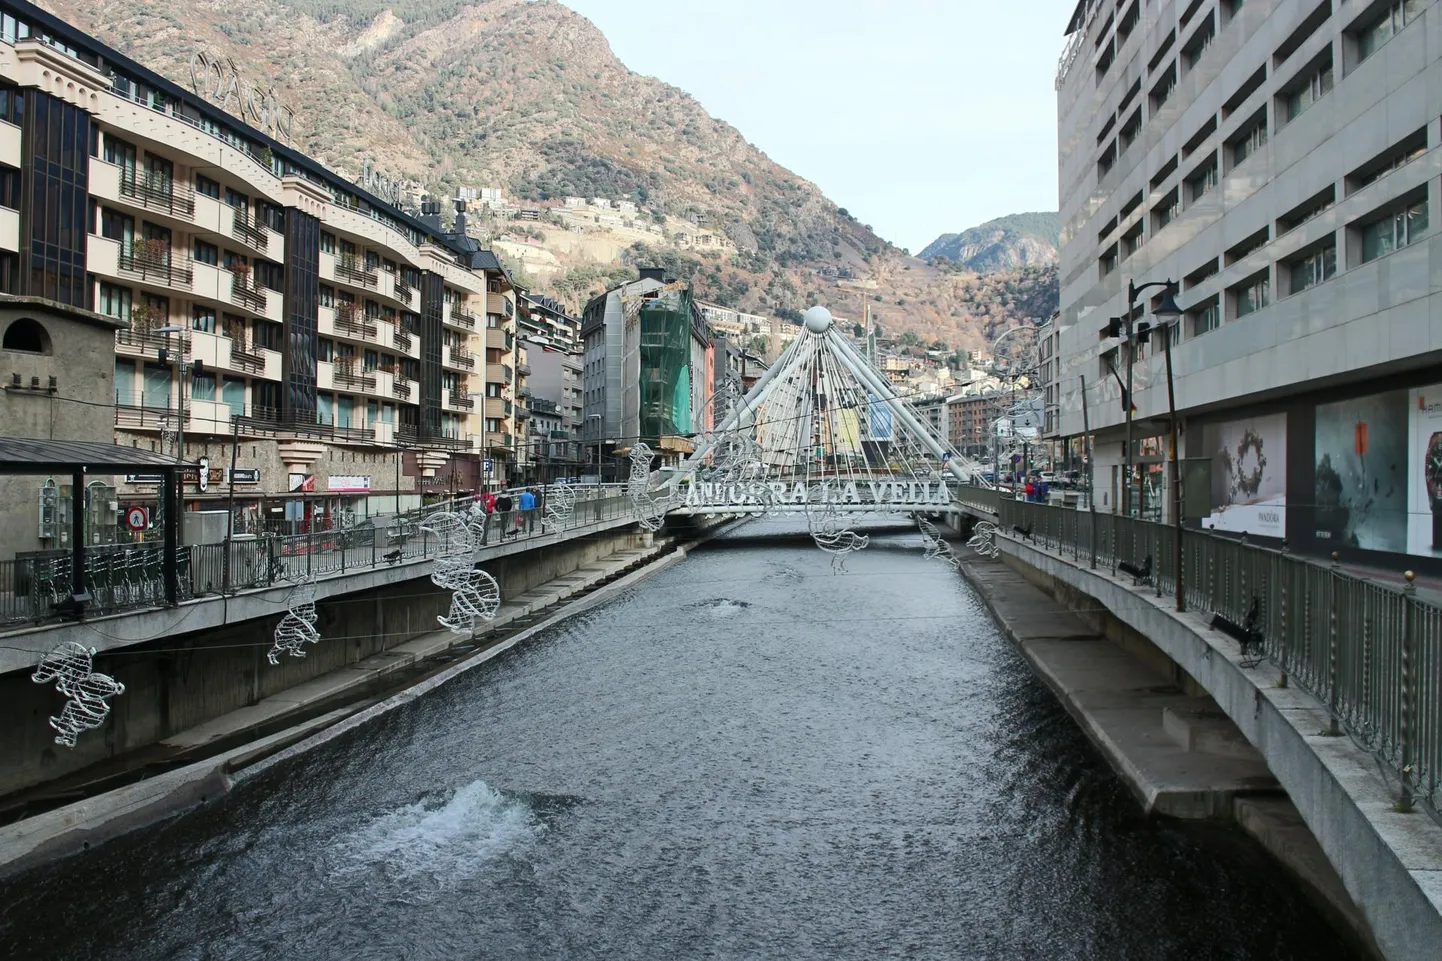 Üürikorterite põud pole säästnud ka vürstiriigi pealinna Andorra la Vellat.